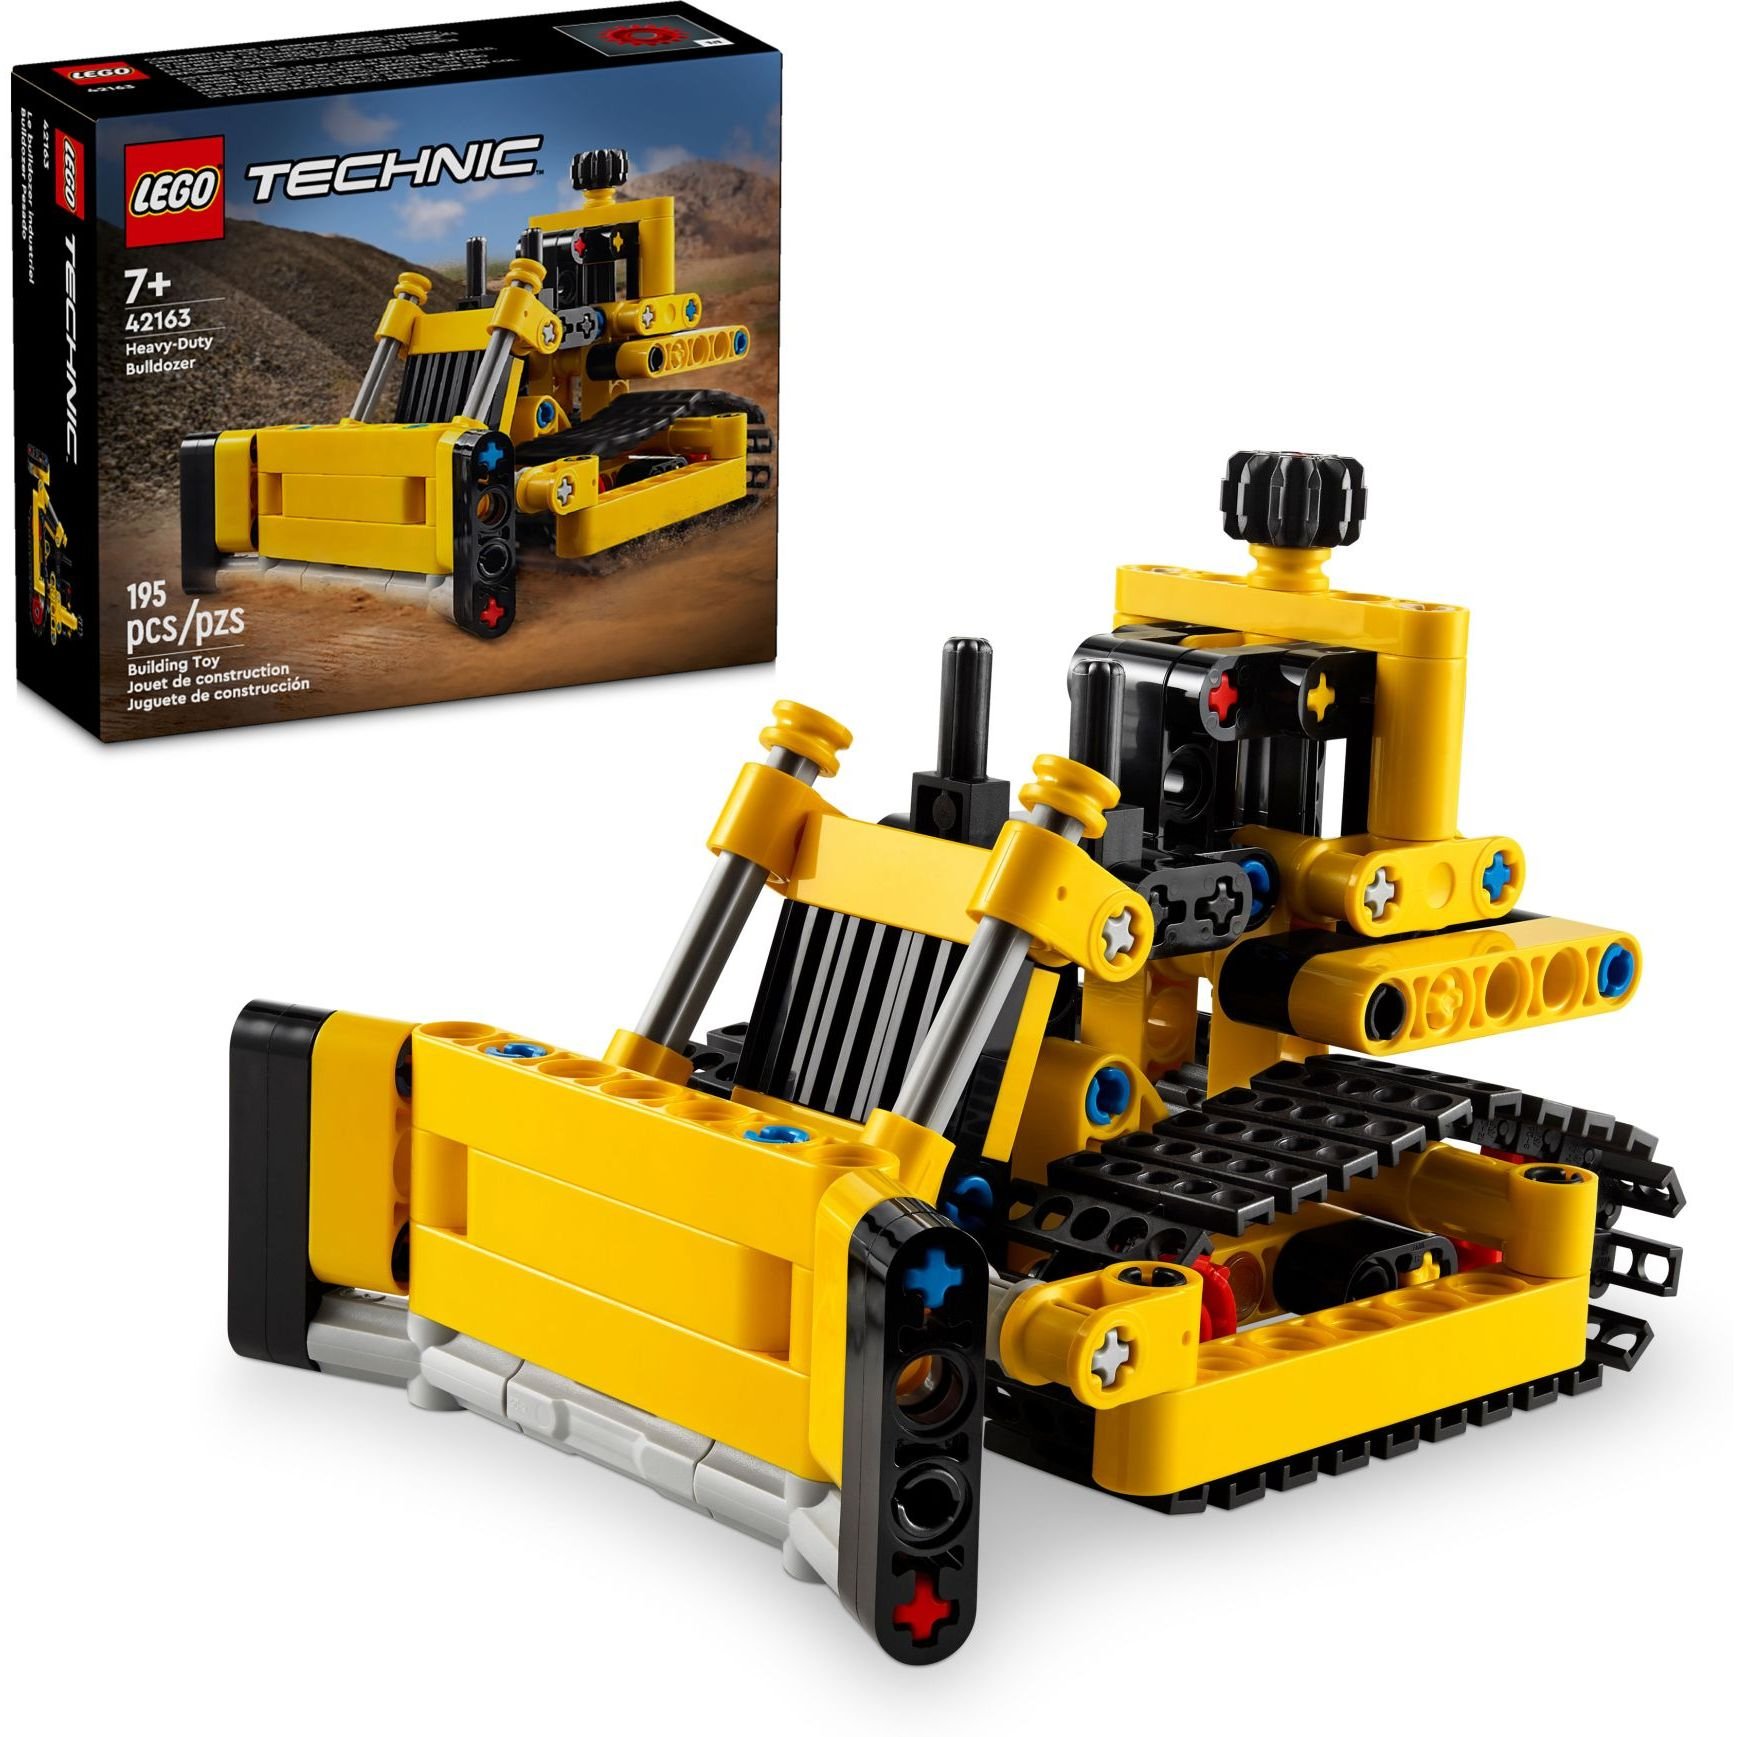 Конструктор LEGO Technic Сверхмощный бульдозер 195 детали (42163) - фото 4